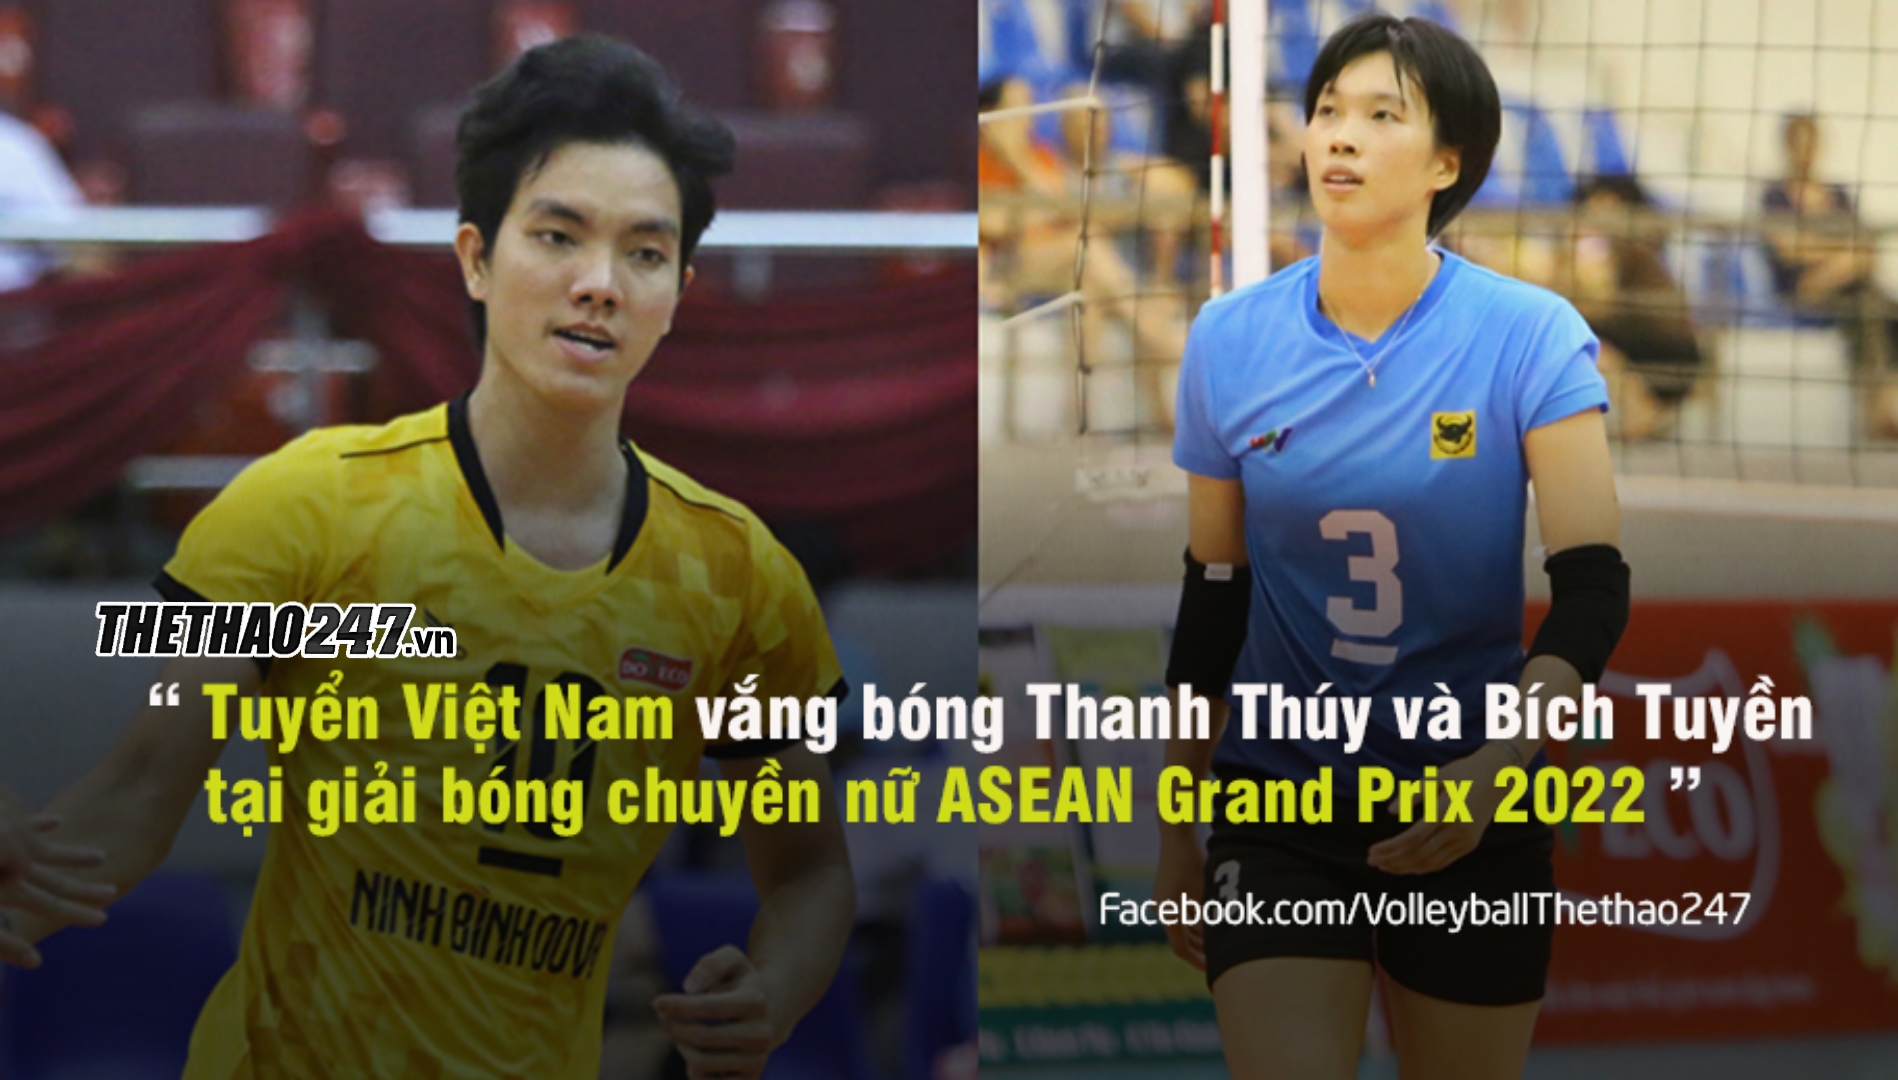 thumbnail - Vắng Thanh Thúy - Bích Tuyền, ASEAN Grand Prix lại là thảm họa?